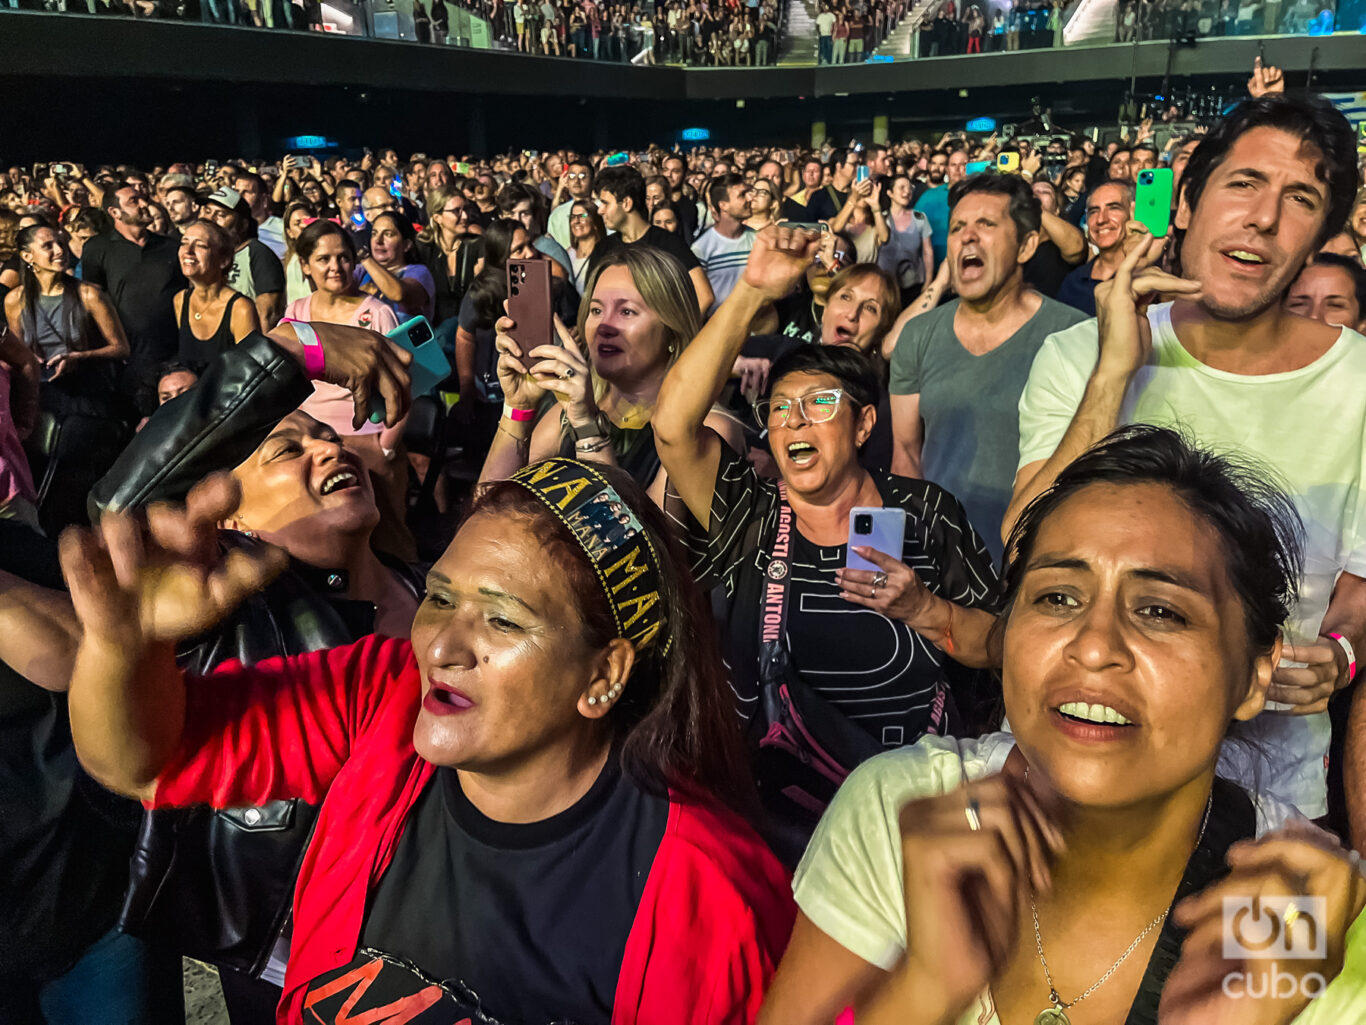 El público delirando con el concierto de Maná en Buenos Aires. Foto: Kaloian.
